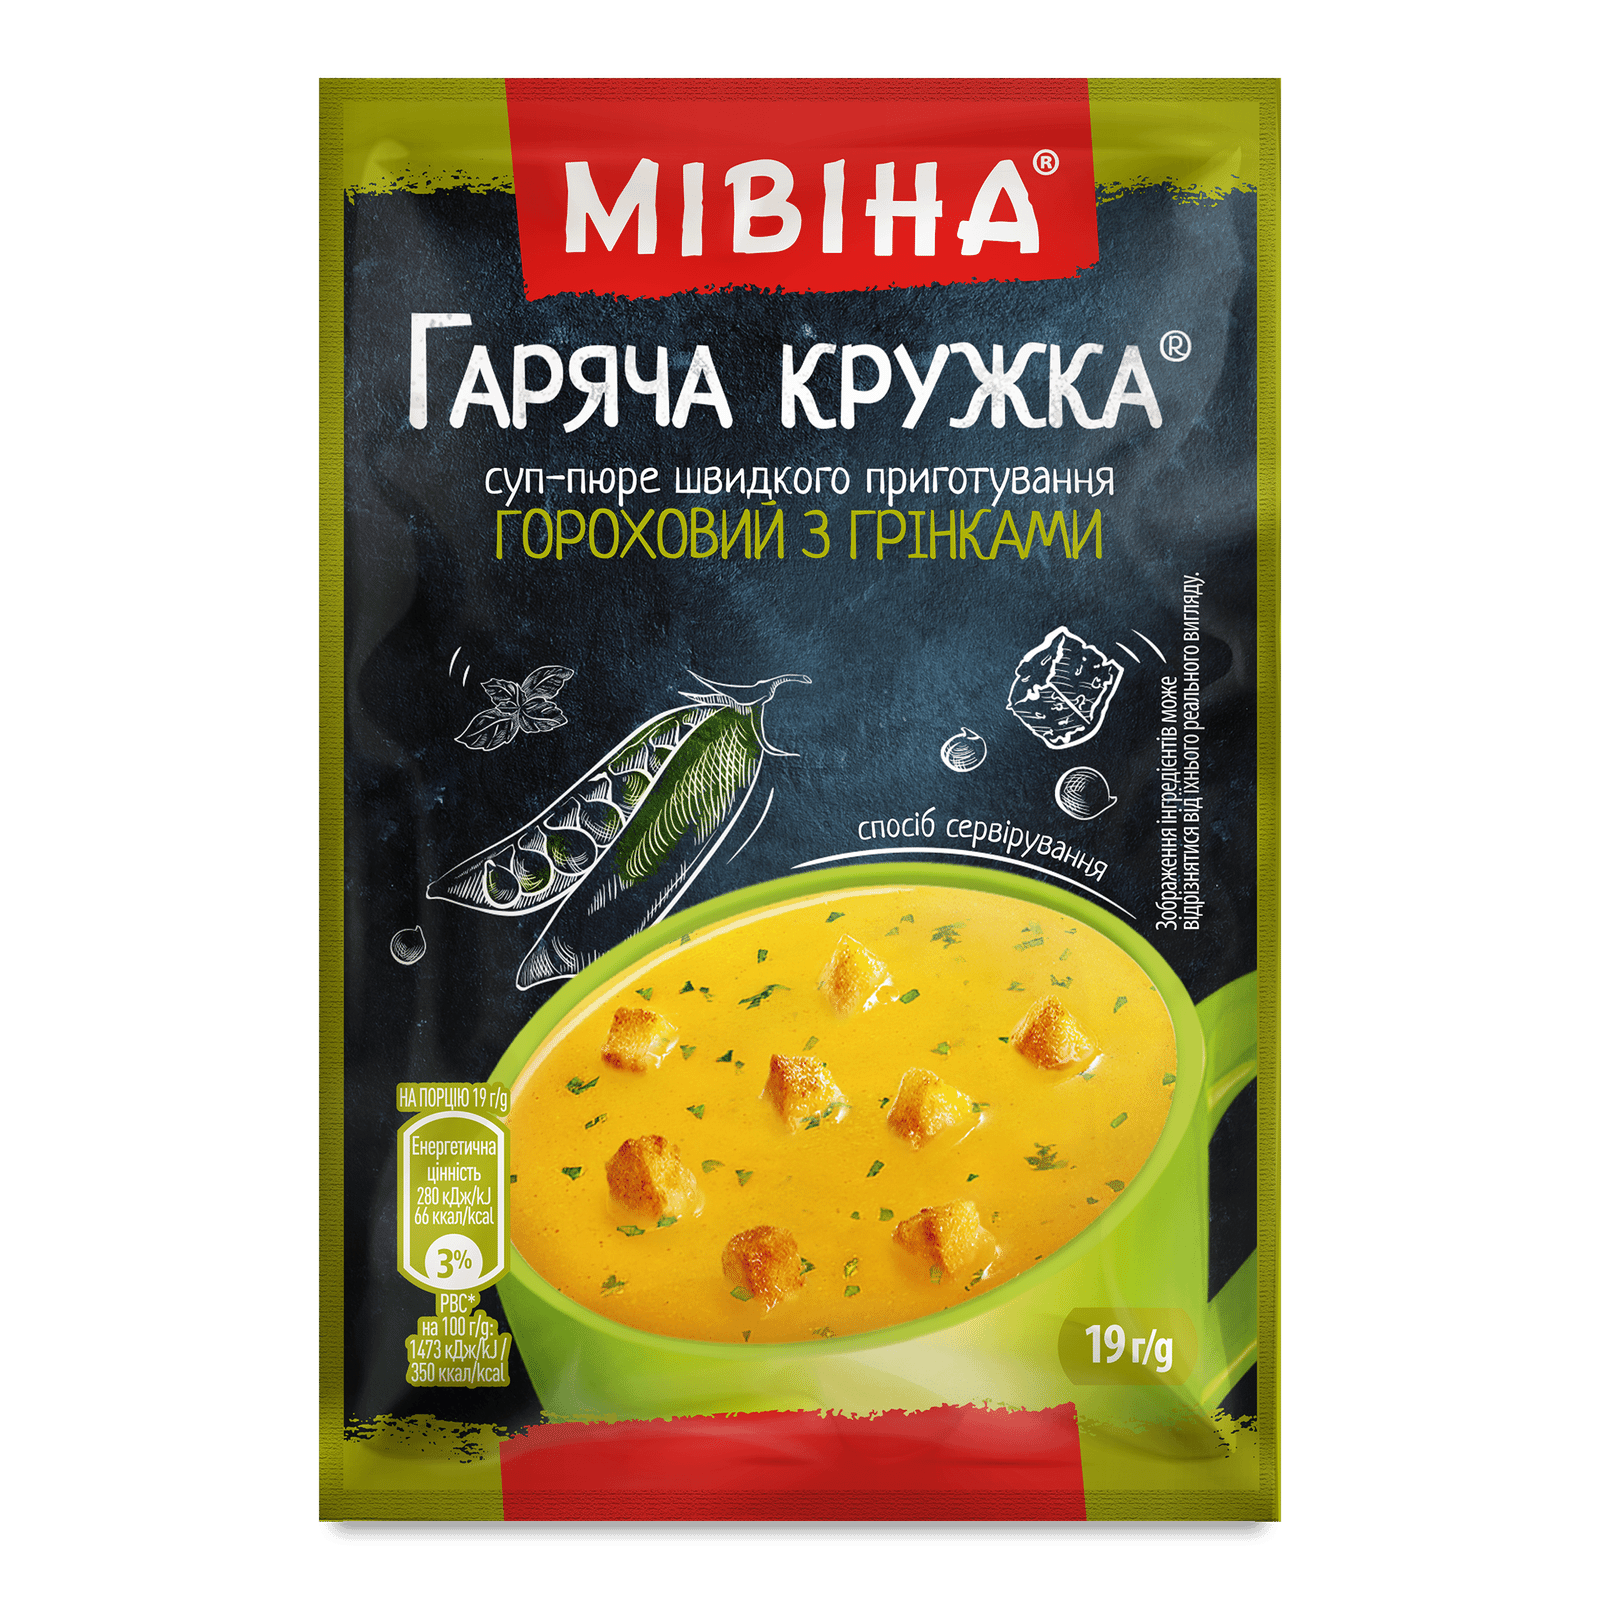 Суп-пюре Мівіна Гаряча кружка гороховий з грінками - 1